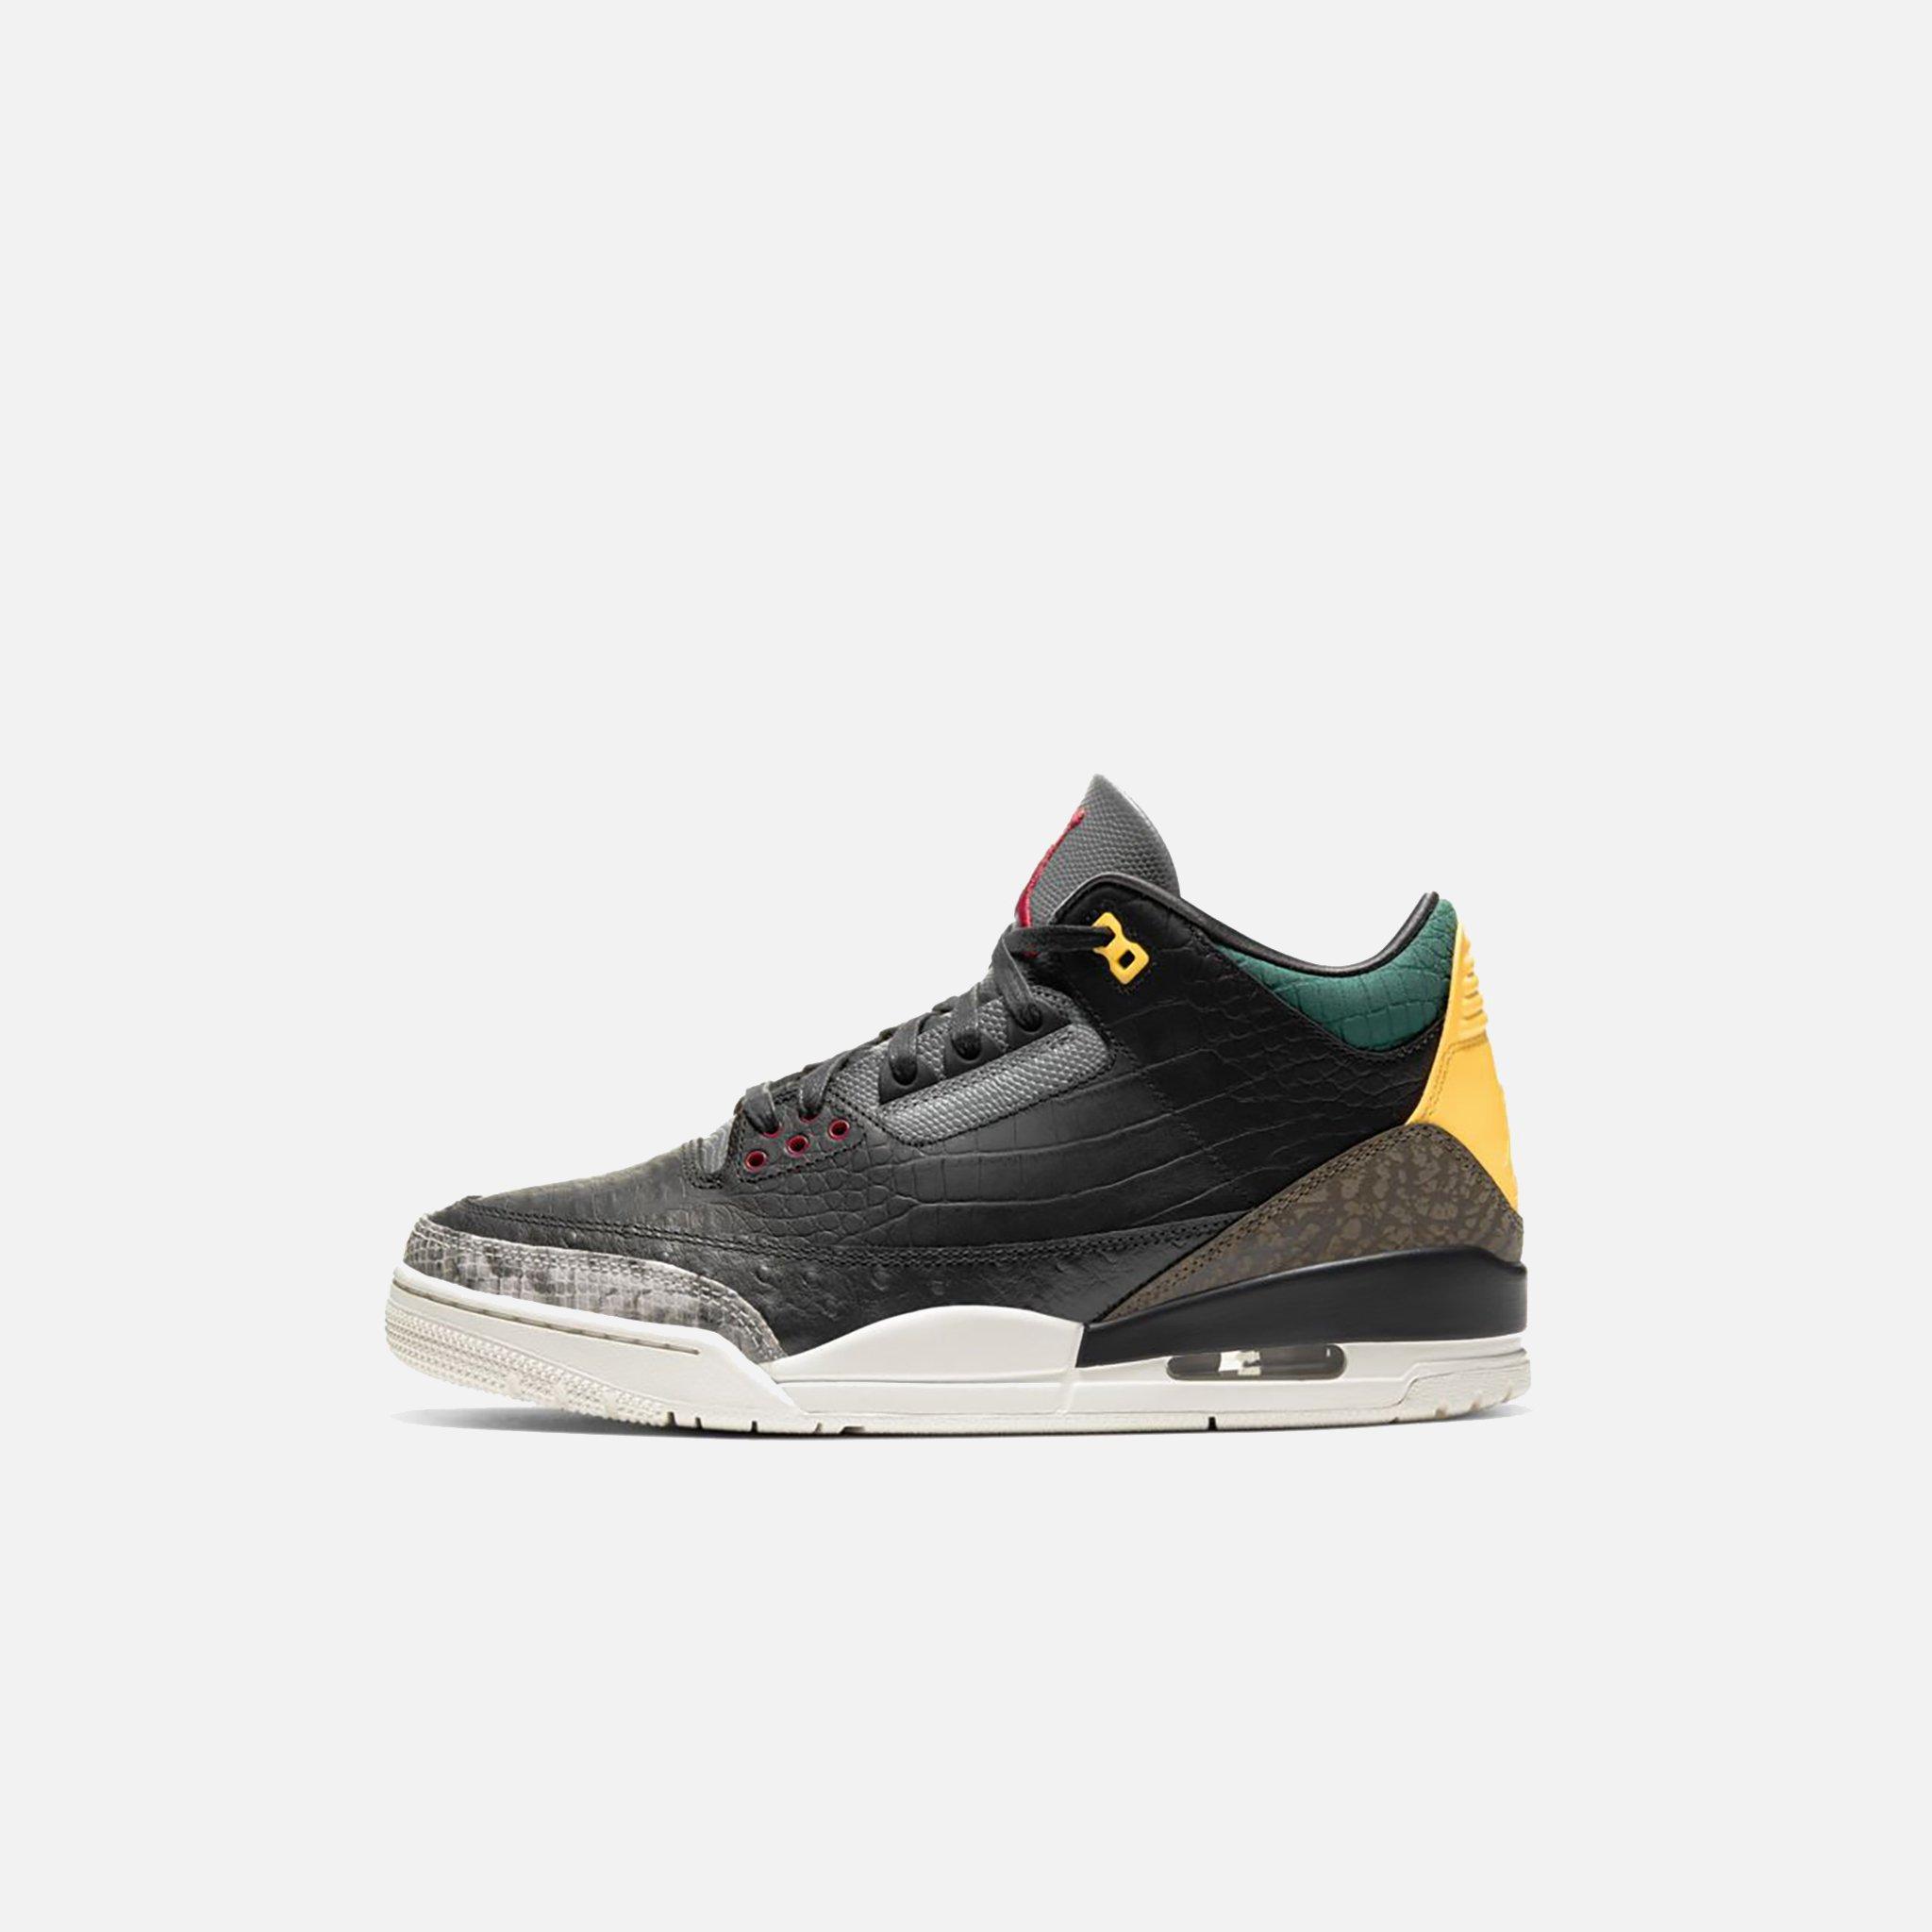 Nike Air Jordan 3 Retro Se in Black/White/Green (Black) for Men 